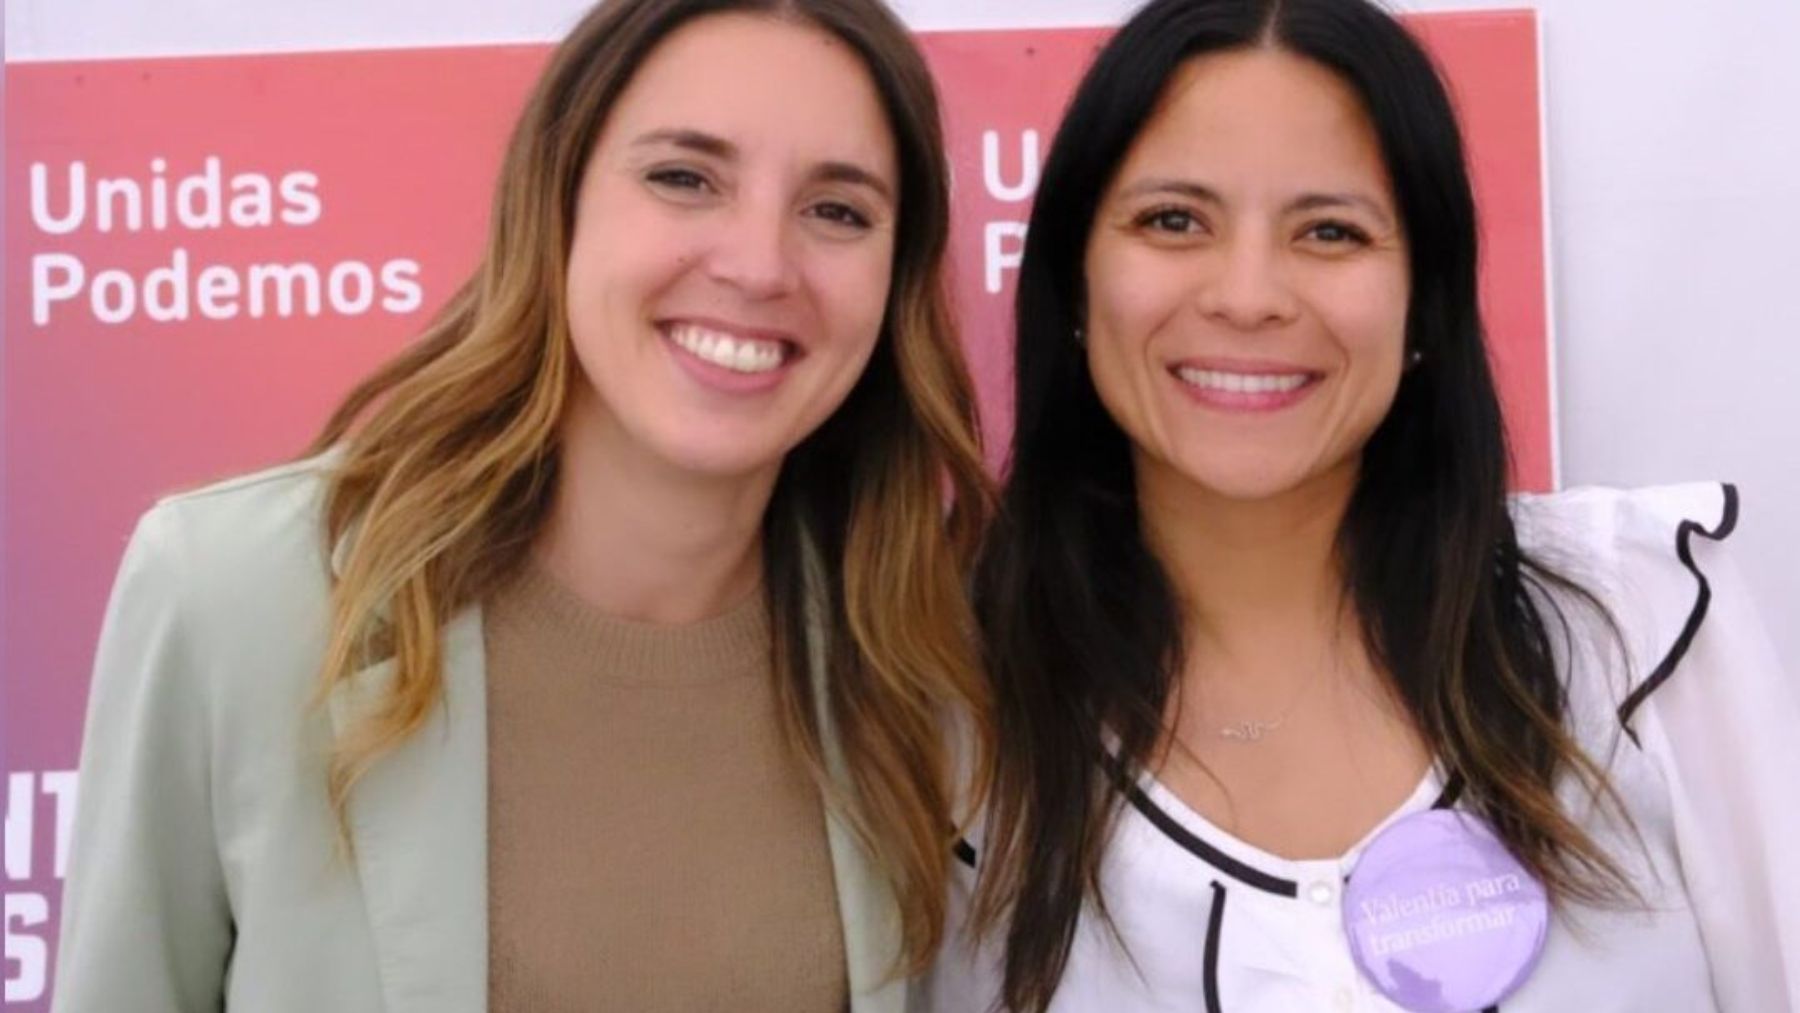 La profesora y concejal de Podemos Ángeles Rosselló junto a la ministra de Igualdad, Irene Montero.